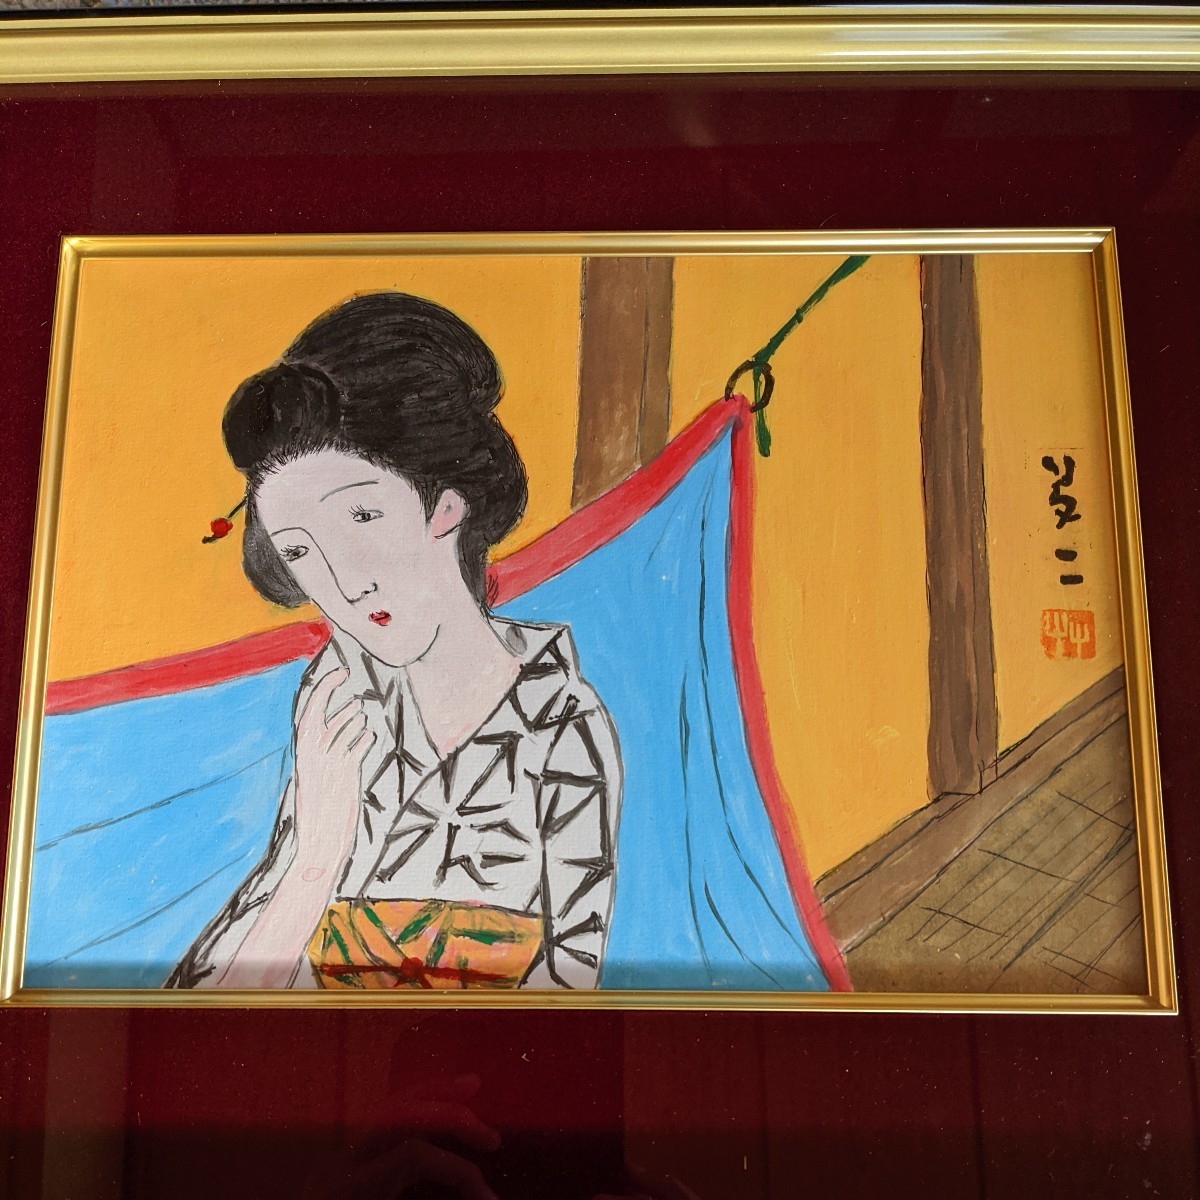 [نسخة] لوحة جمال يوميجي تاكيهيسا يوكاتا, تلوين, اللوحة اليابانية, شخص, بوديساتفا